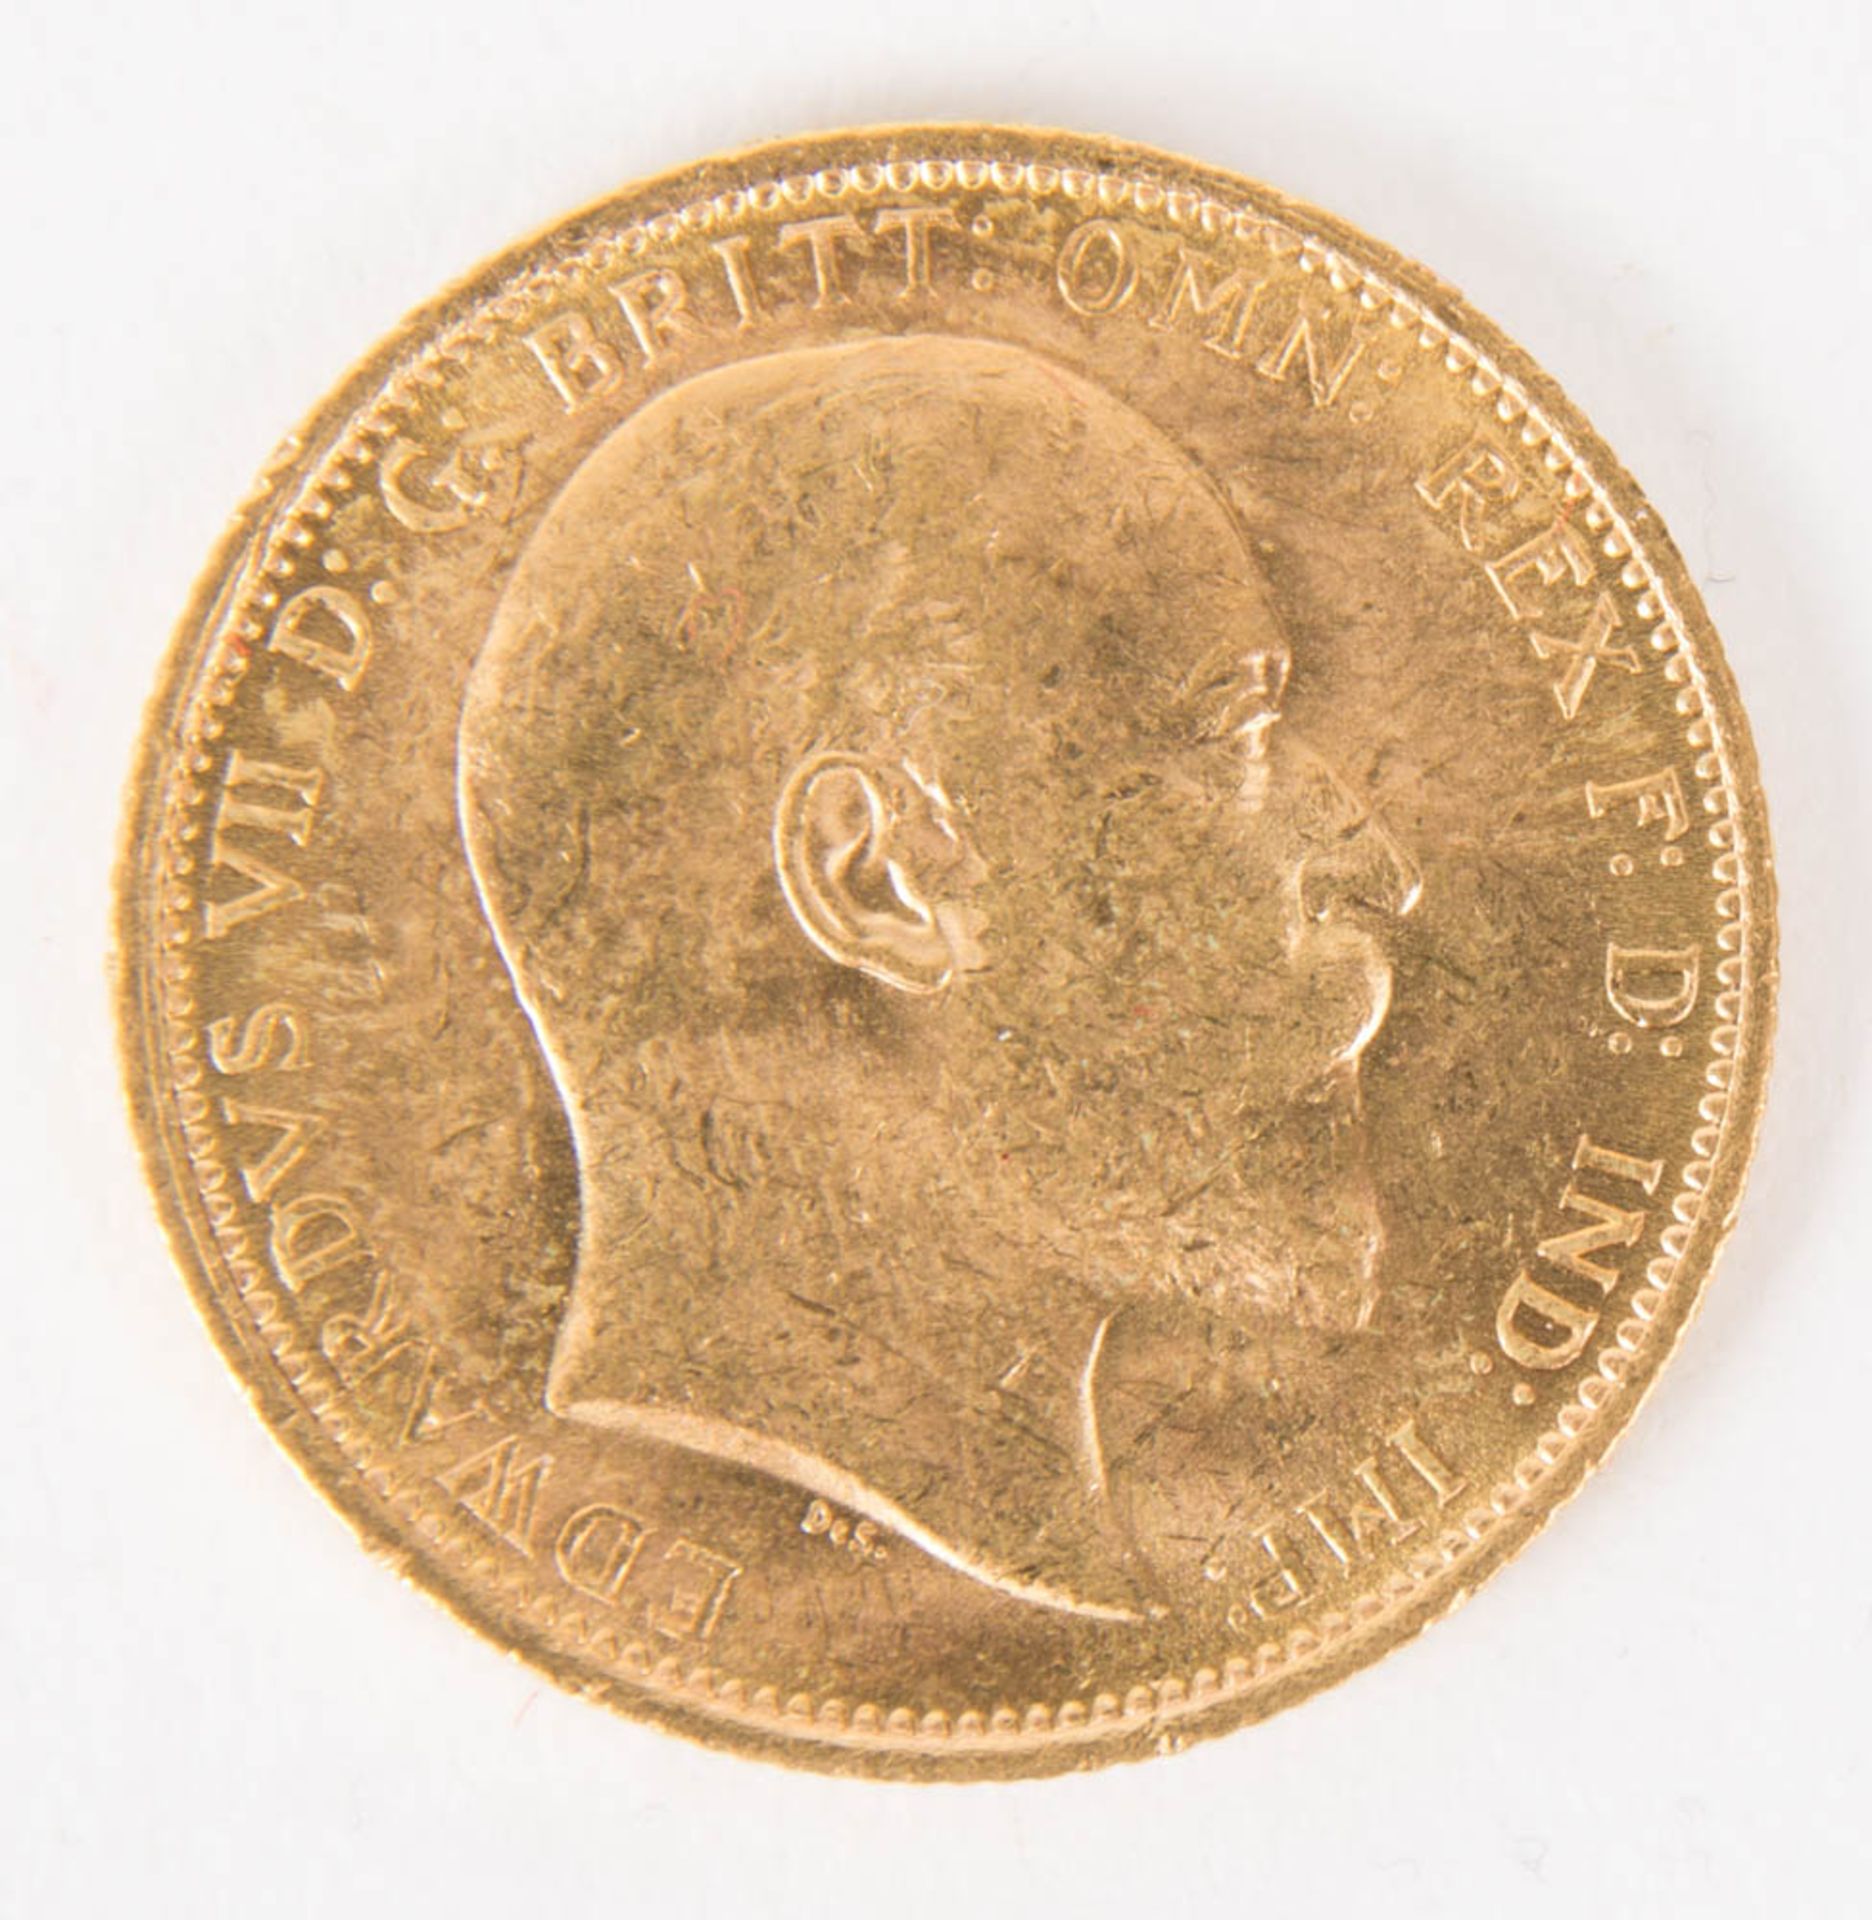 Australien: Sovereign 1907 Gold.